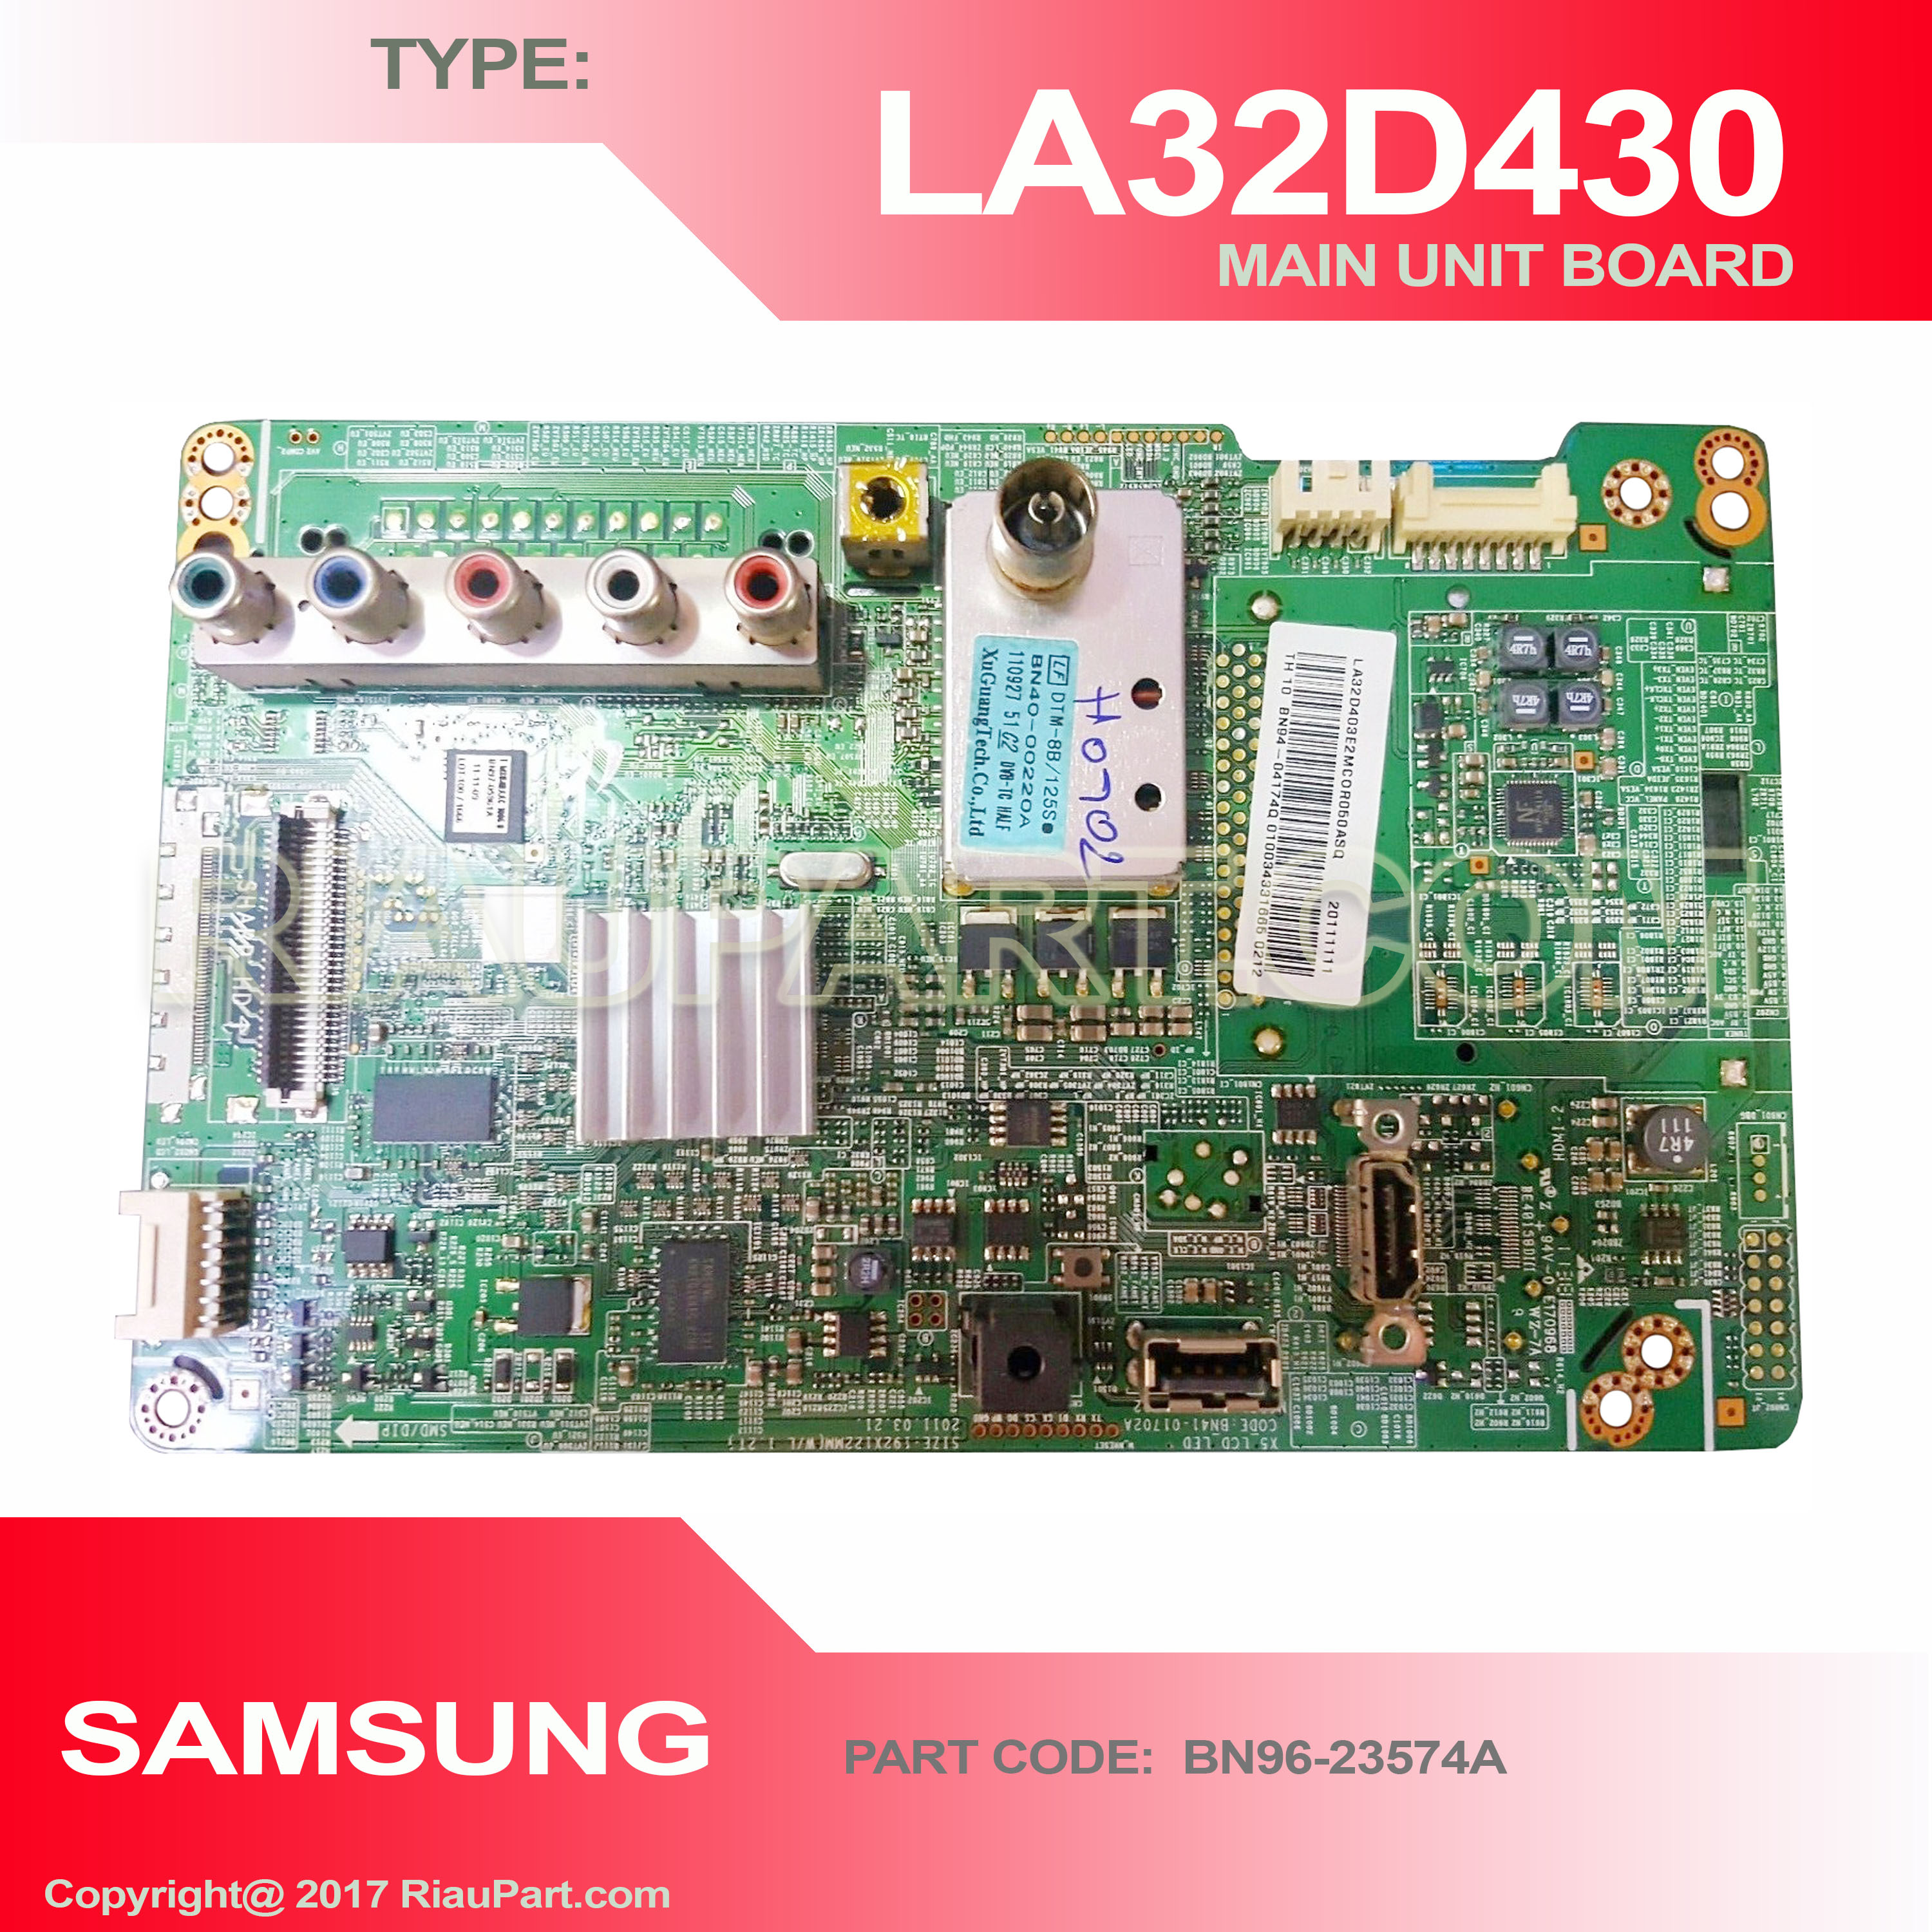 SAMSUNG LA32D430 MAINBOARD MAIN UNIT PART CODE BN96-23574A